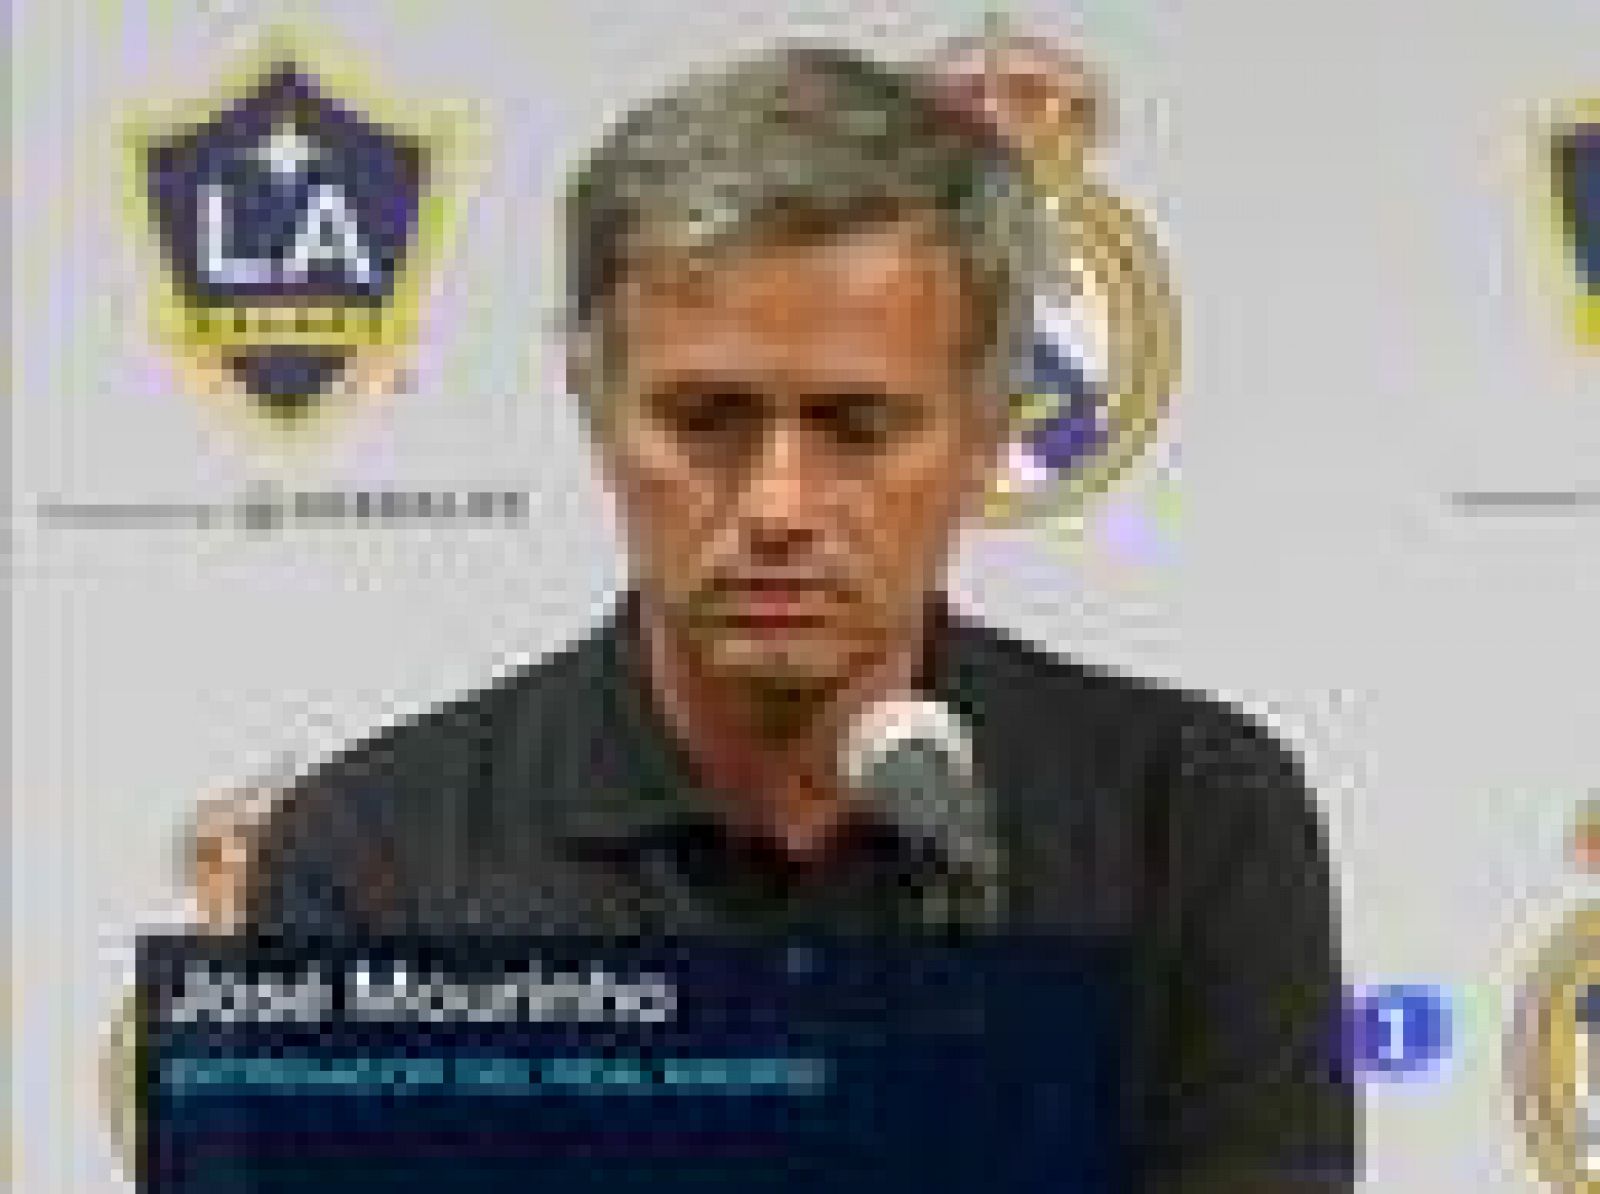  El entrenador del Real Madrid, José Mourinho, ha manifestado que hay oportunidades para todos loos jugadores y que ninguno tiene asegurado el sitio en el once titular.